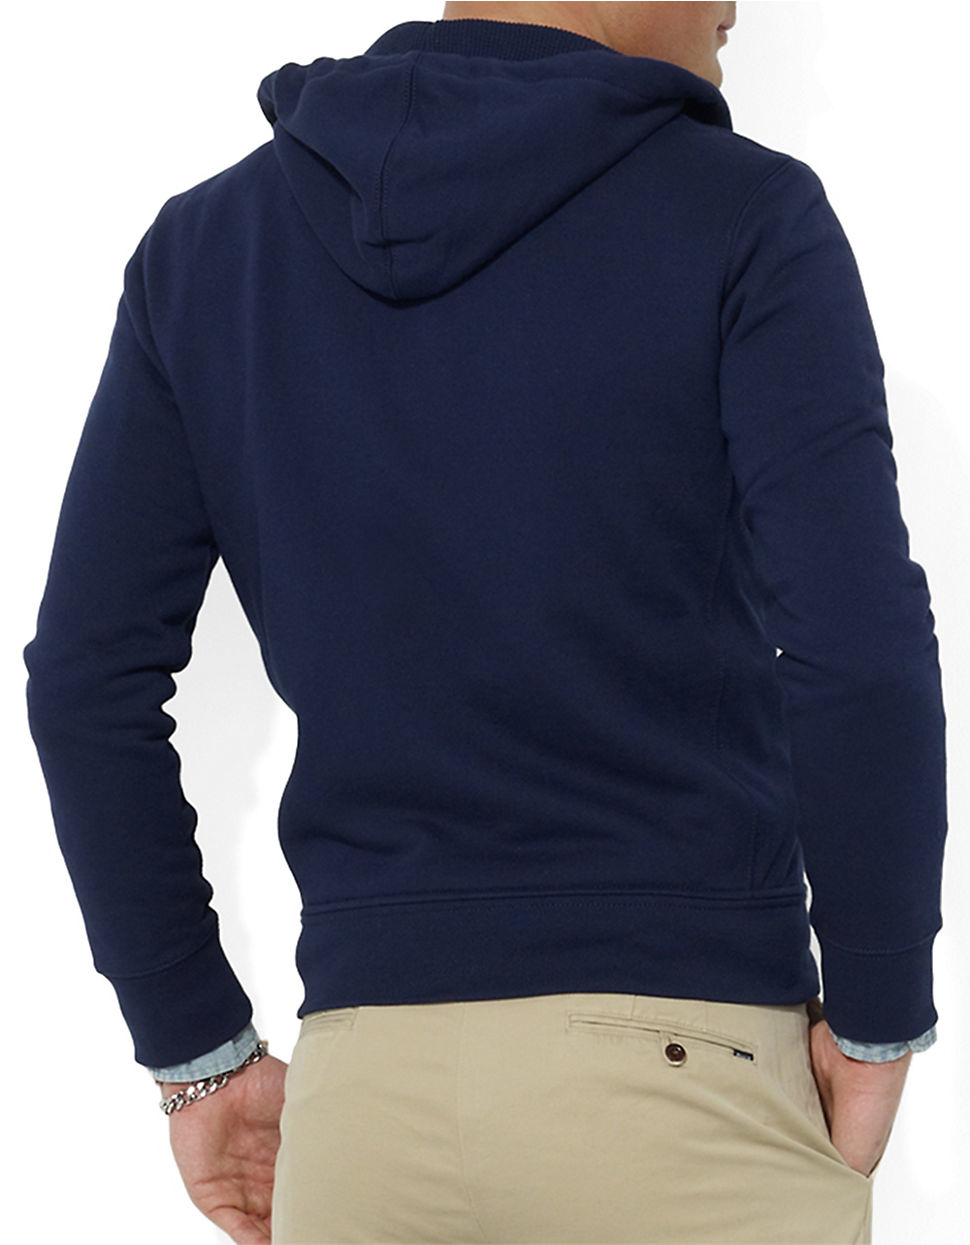 Polo Ralph Lauren Full-Zip Fleece Hoodie in Navy (Blue) for Men - Lyst